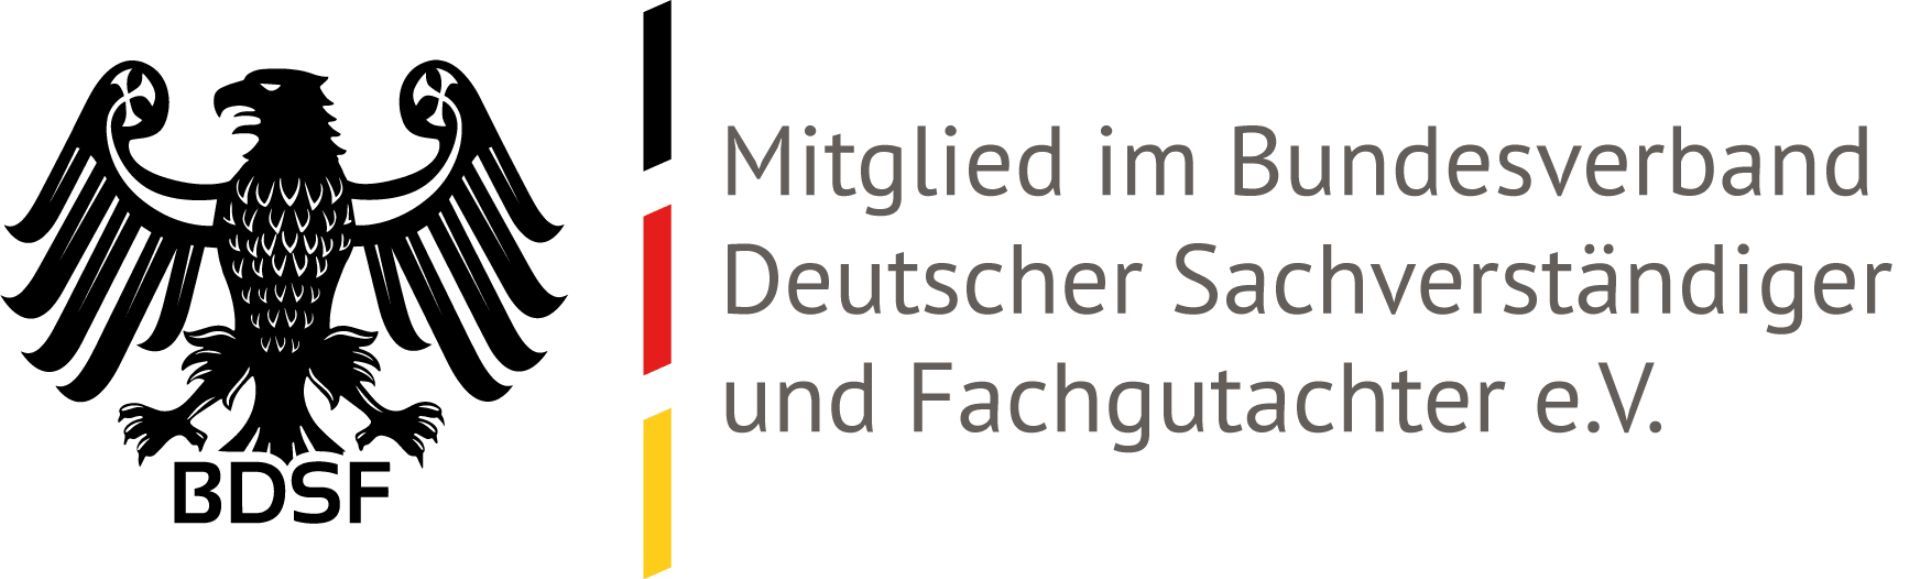 BDSF Bundesverband Deutscher Sachverständiger und Fachgutachter e.V.